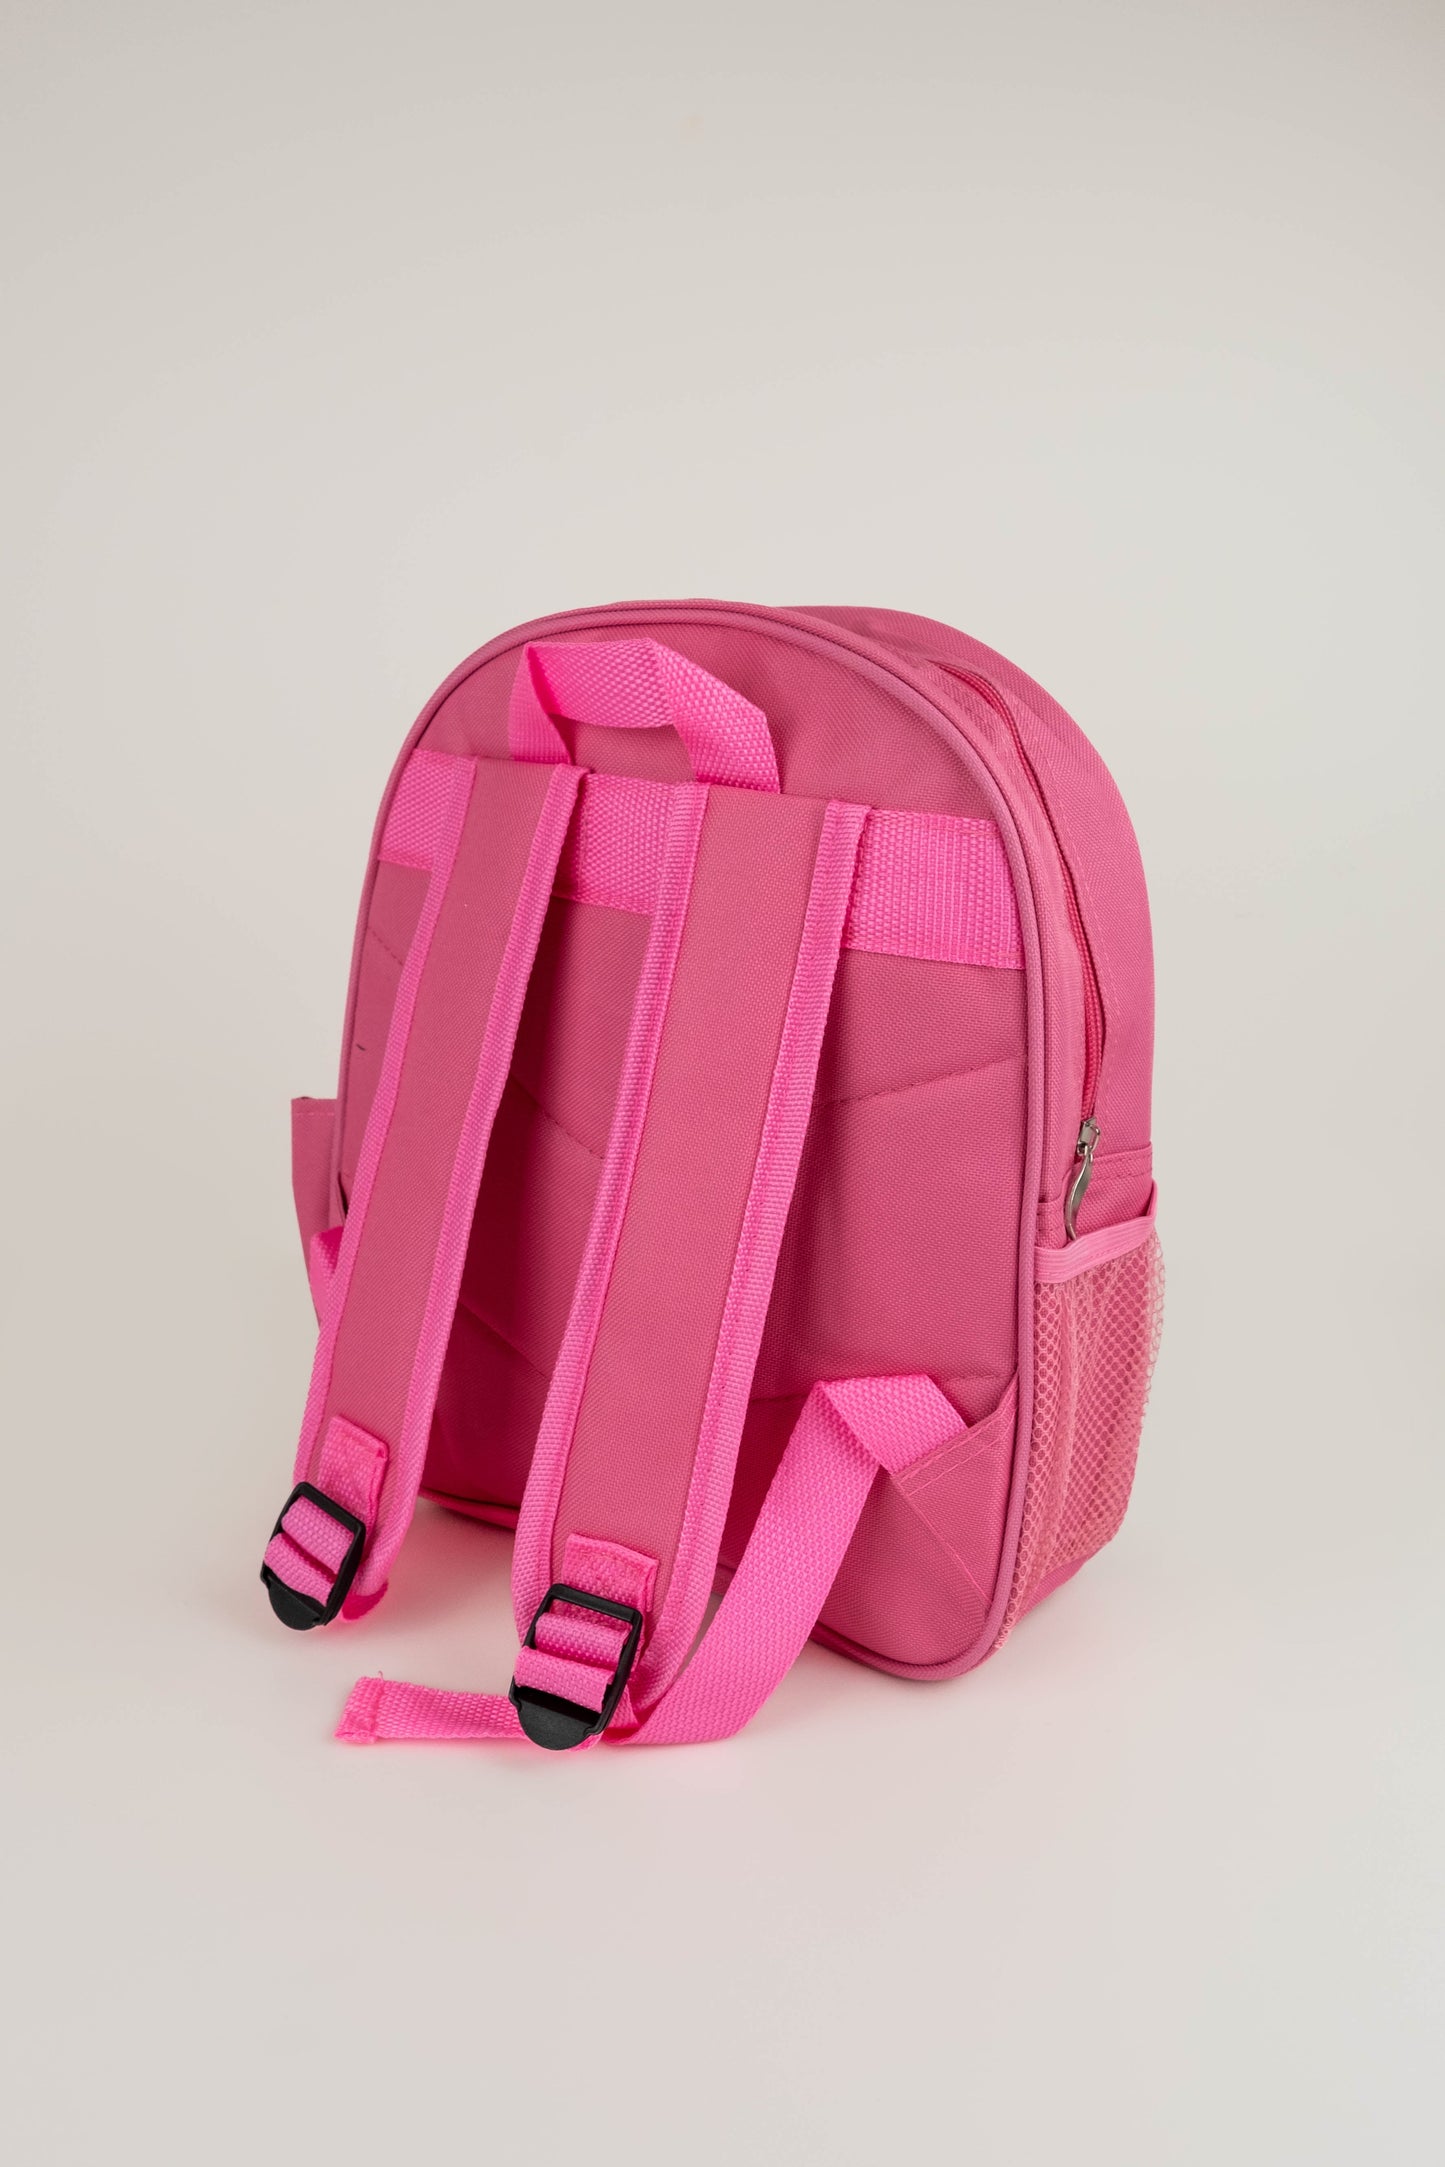 Children’s Personalised Backpack - Boho Dinosaur Design - Blue